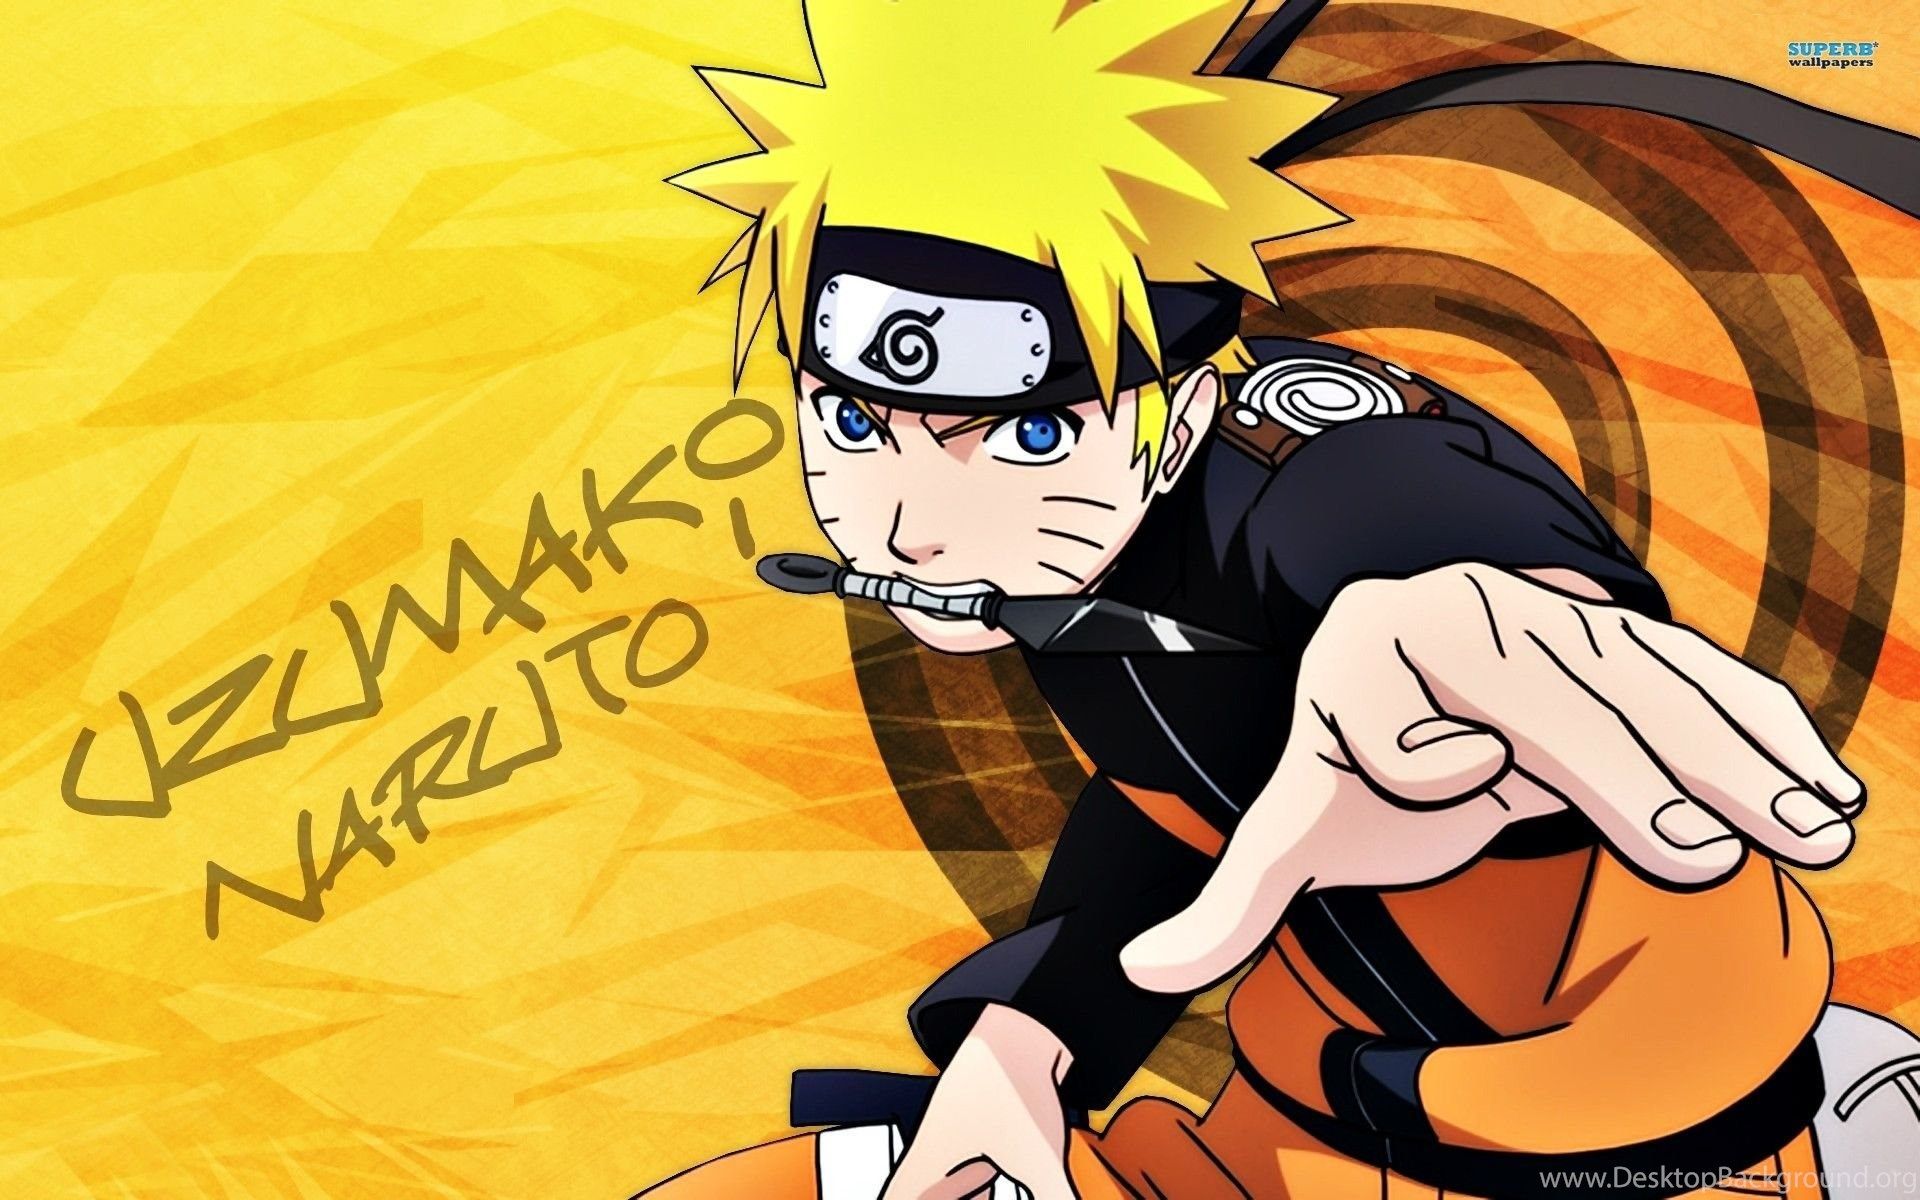 Naruto uzumaki wallpaper of 2015 boruto naruto the movie anime character naruto wallpaper Desktop Background